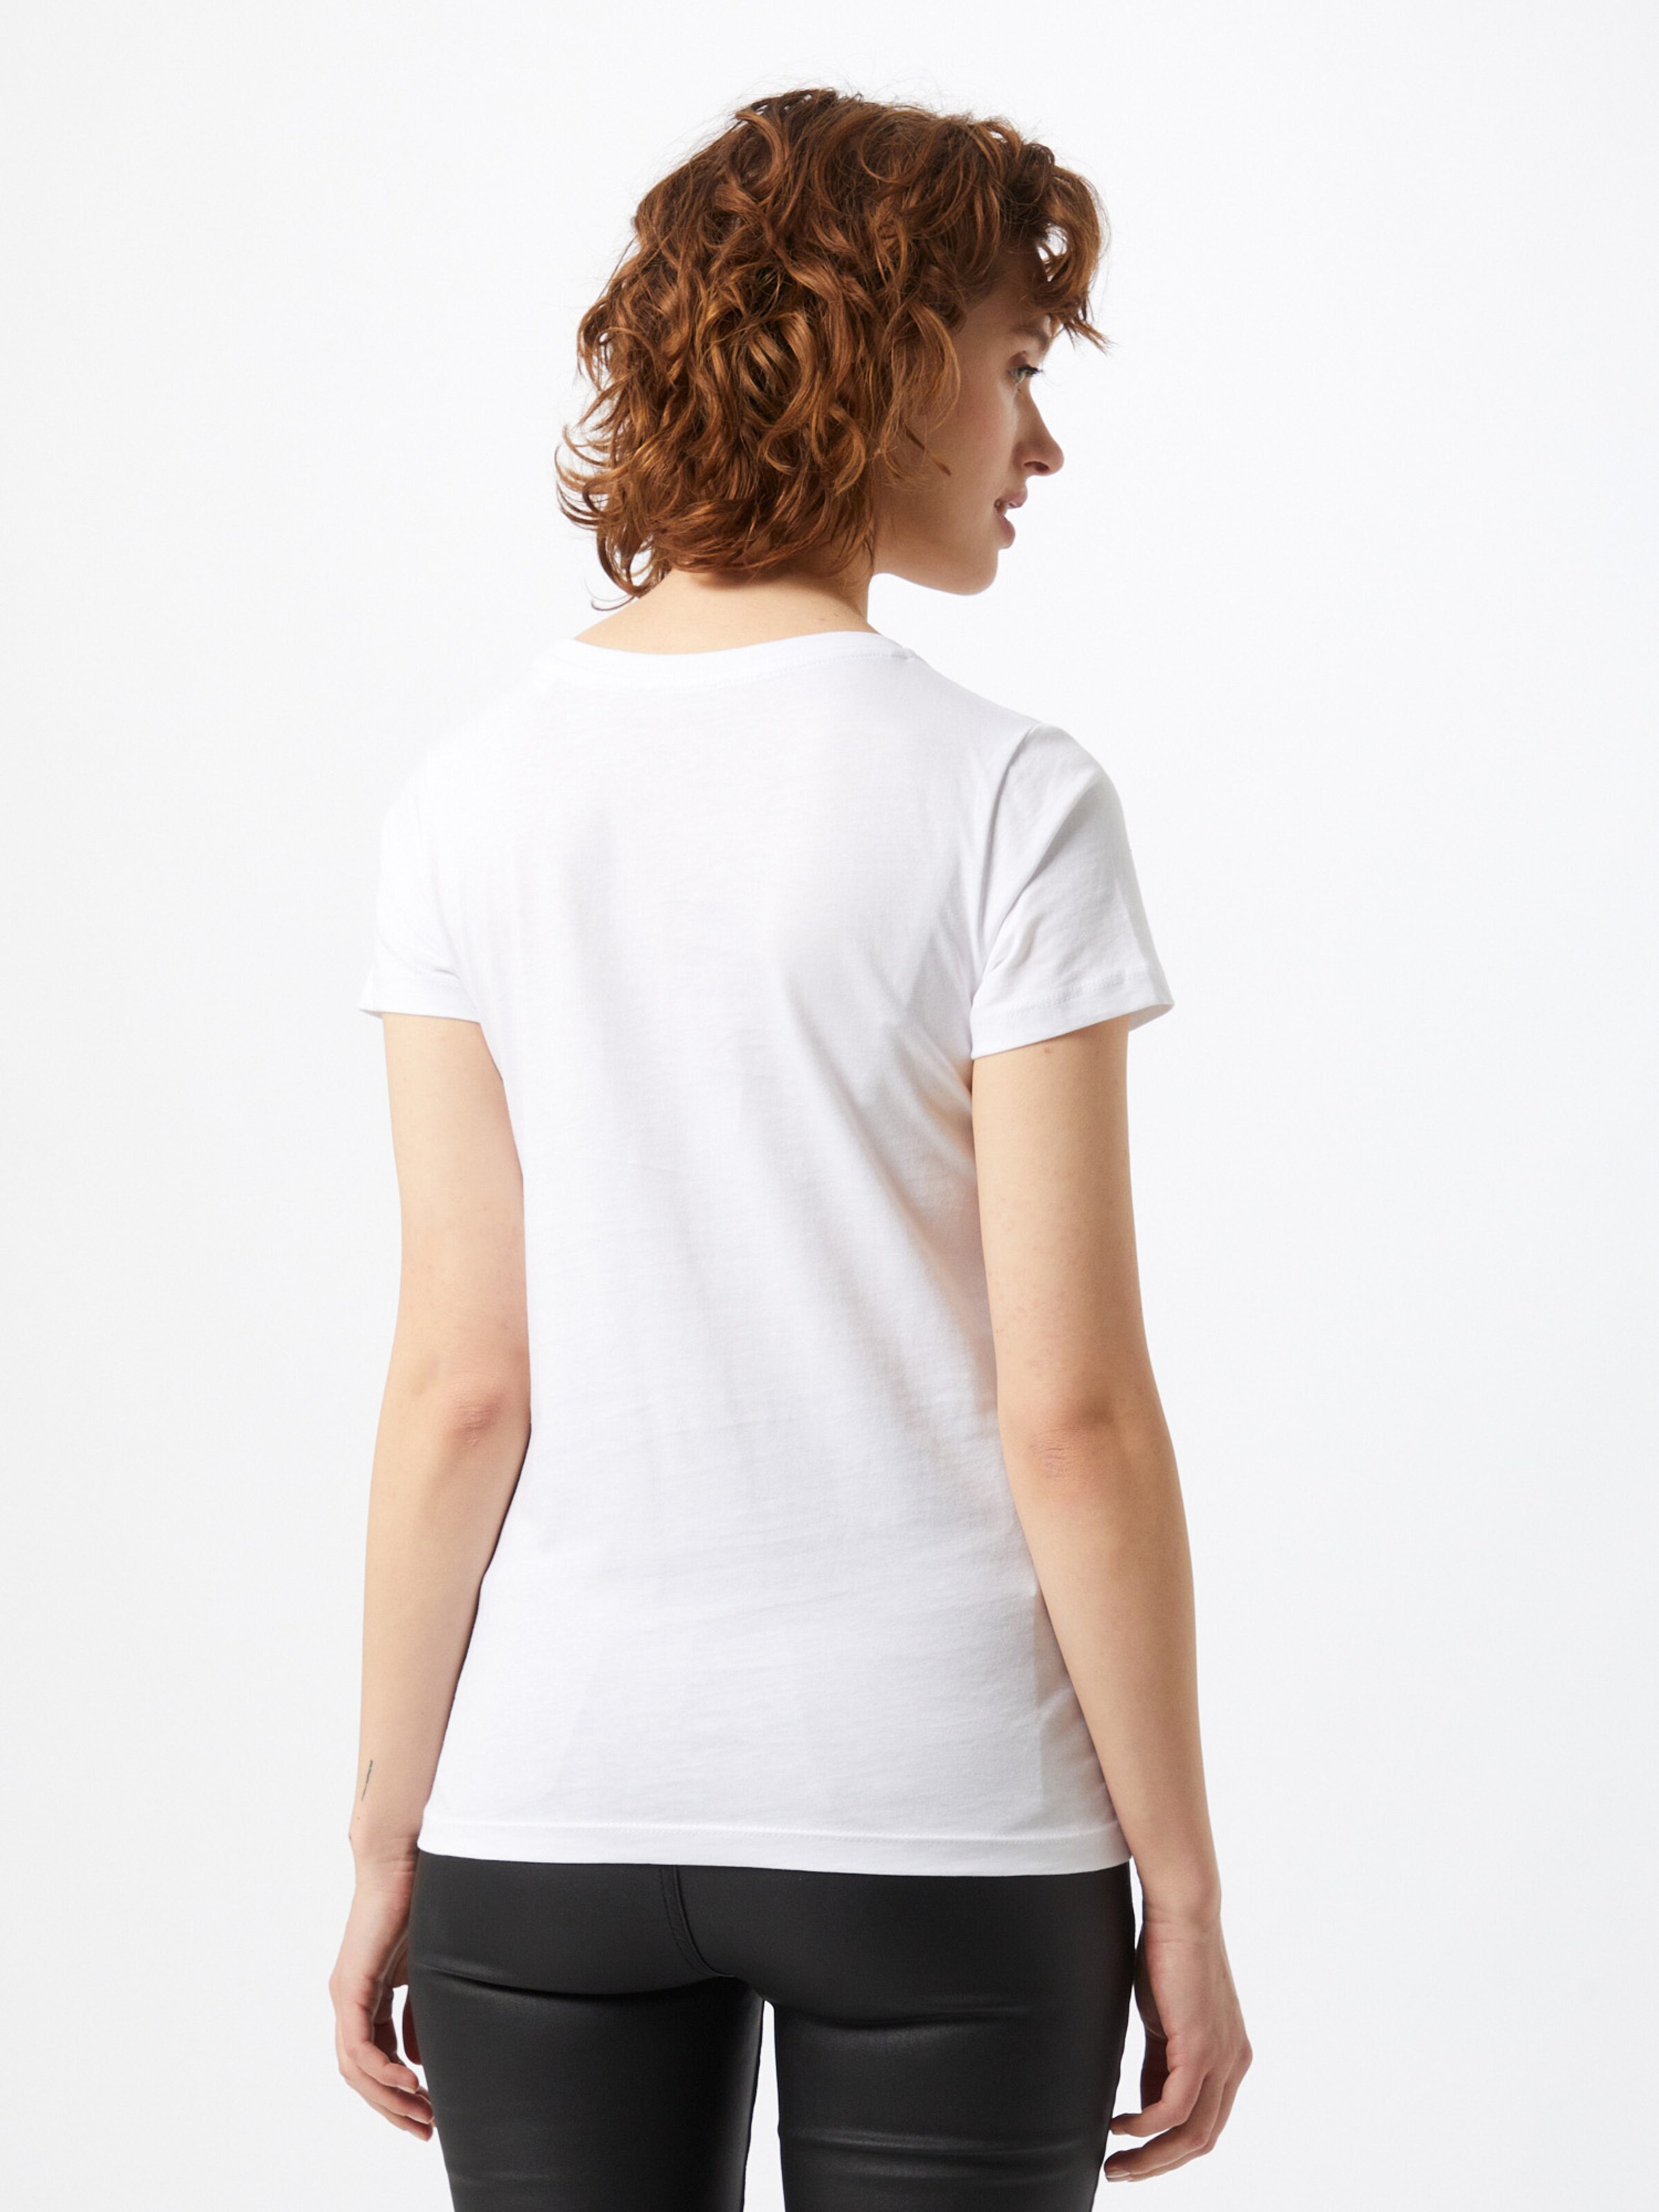 Frauen Shirts & Tops EINSTEIN & NEWTON T-Shirt in Weiß - PD10360